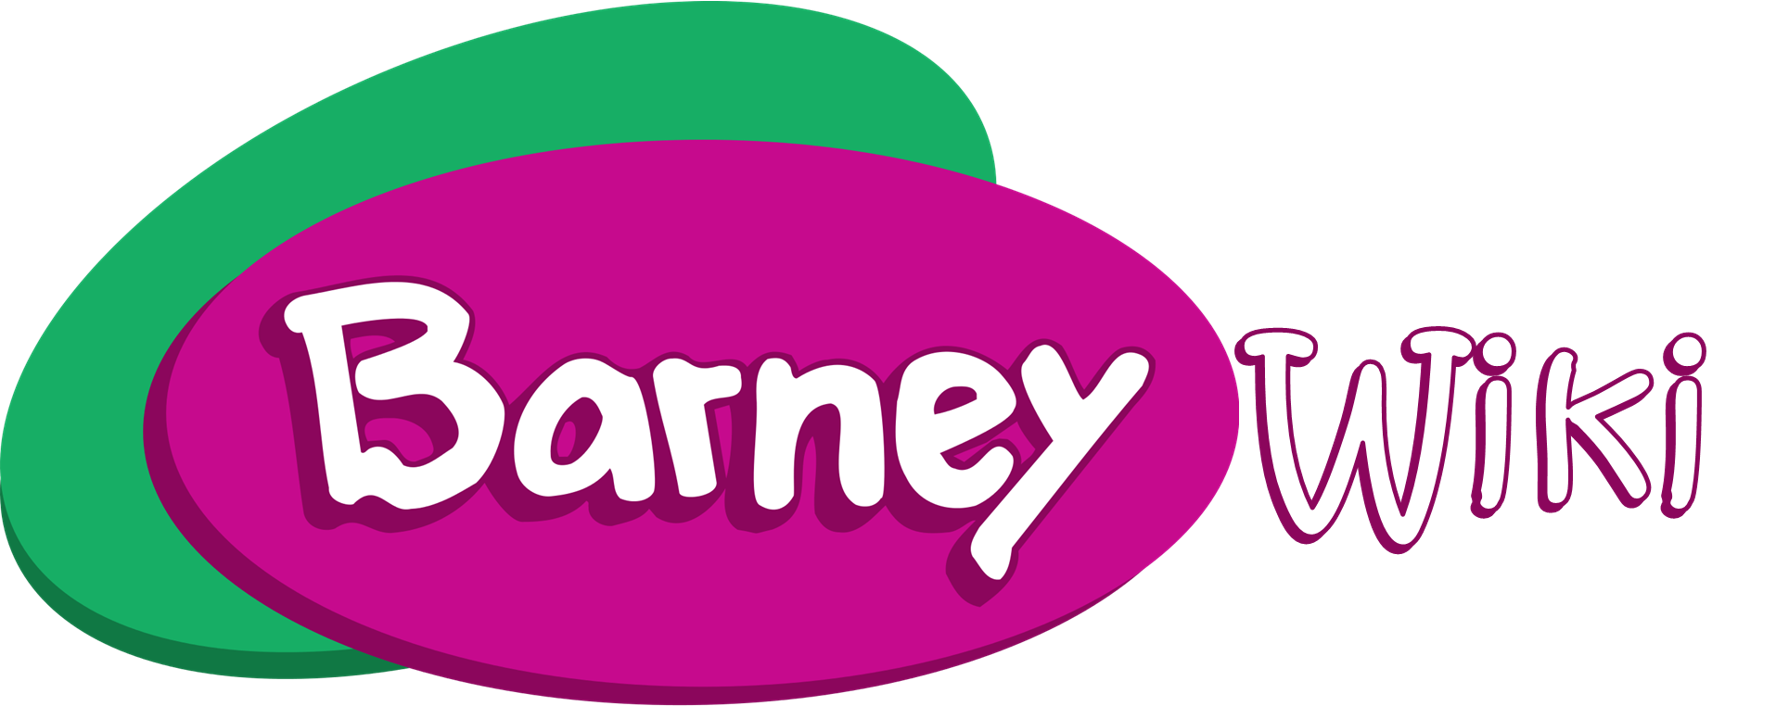 Barney S Great Adventure Barney Wiki Fandom